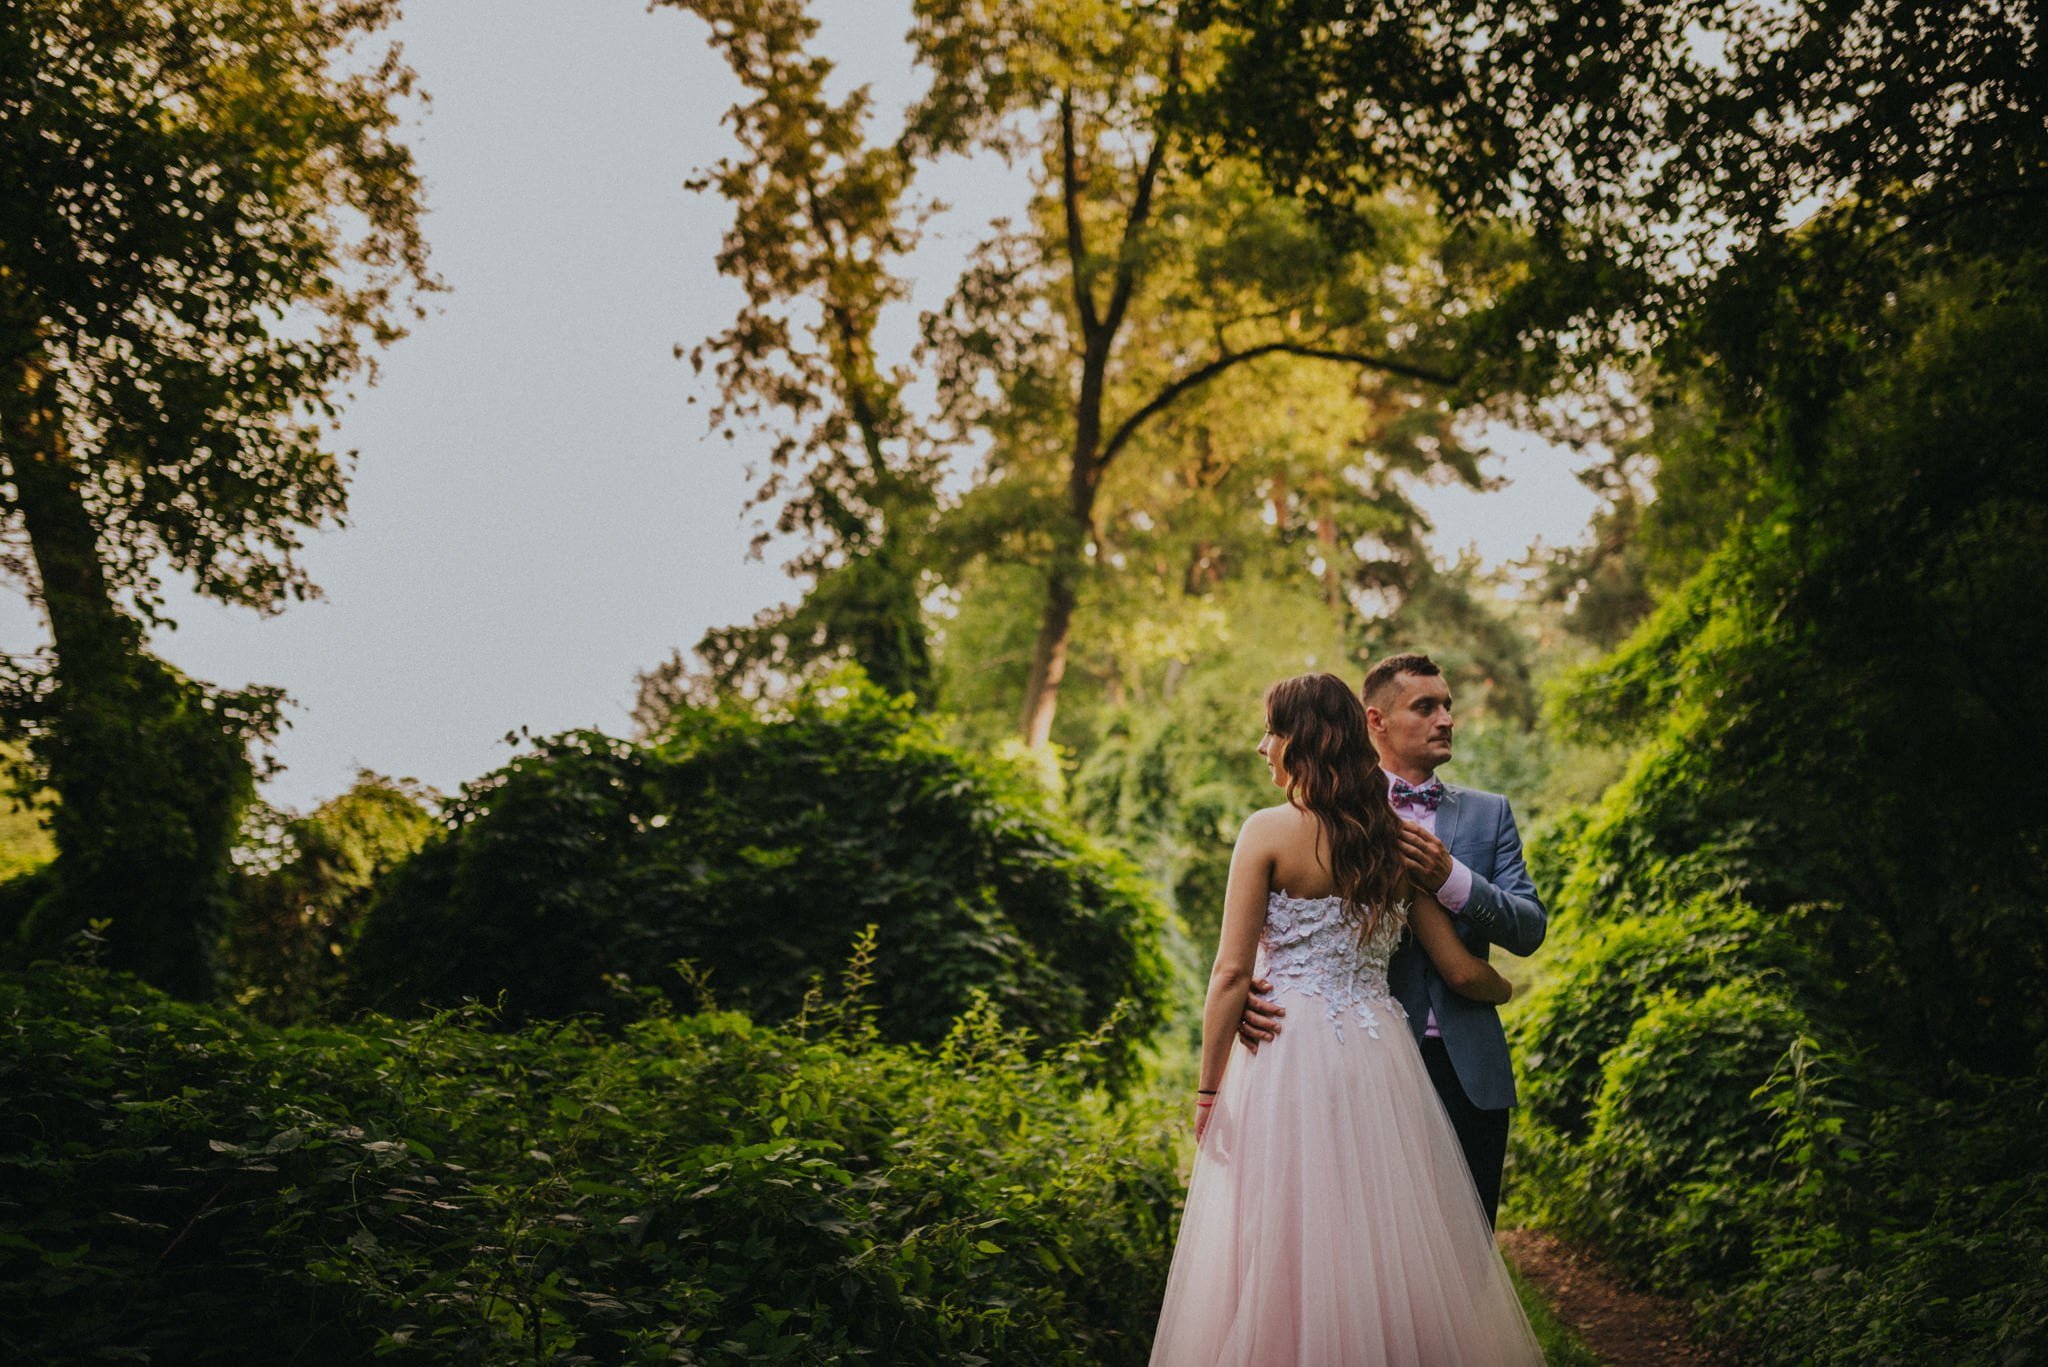 Karolina + Artur | Rustykalna sesja ślubna w Górnośląskim Parku Etnograficznym w Chorzowie